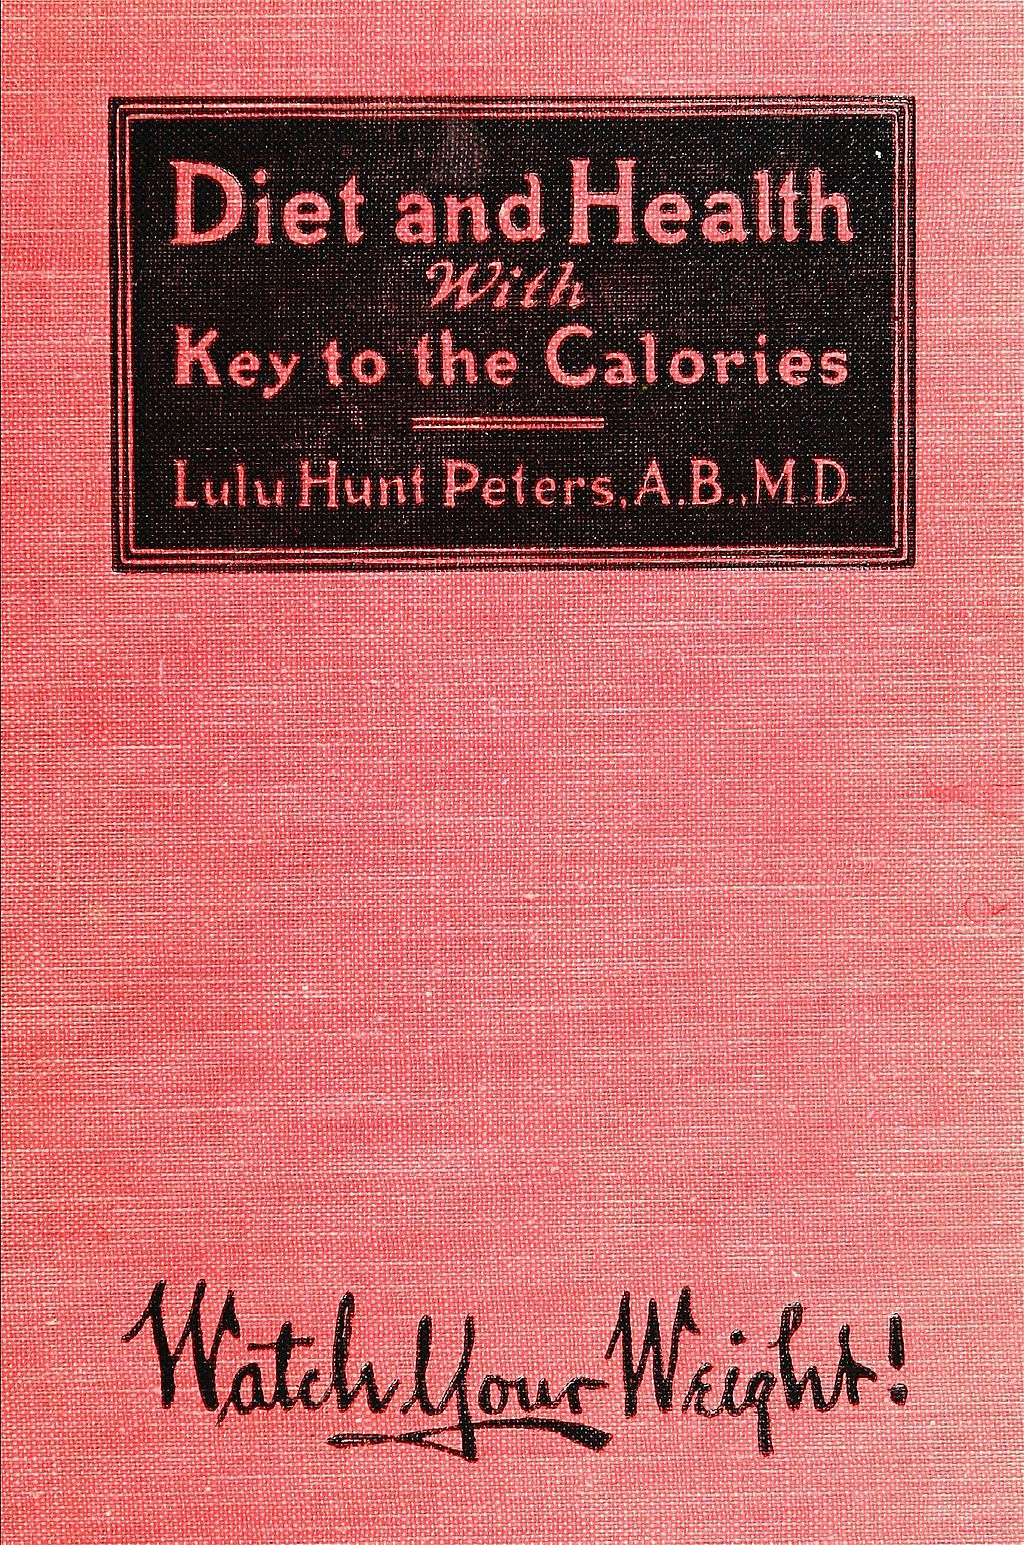 Een boek met een roze cover en bovenaan een zwart vlak met de titel en auteur van het boek: Diet and Health With Key tot the Calories, Lulu Hunt Peters, A.B., M.D. Onderaan staat in zwarte letters 'Watch your weight'.